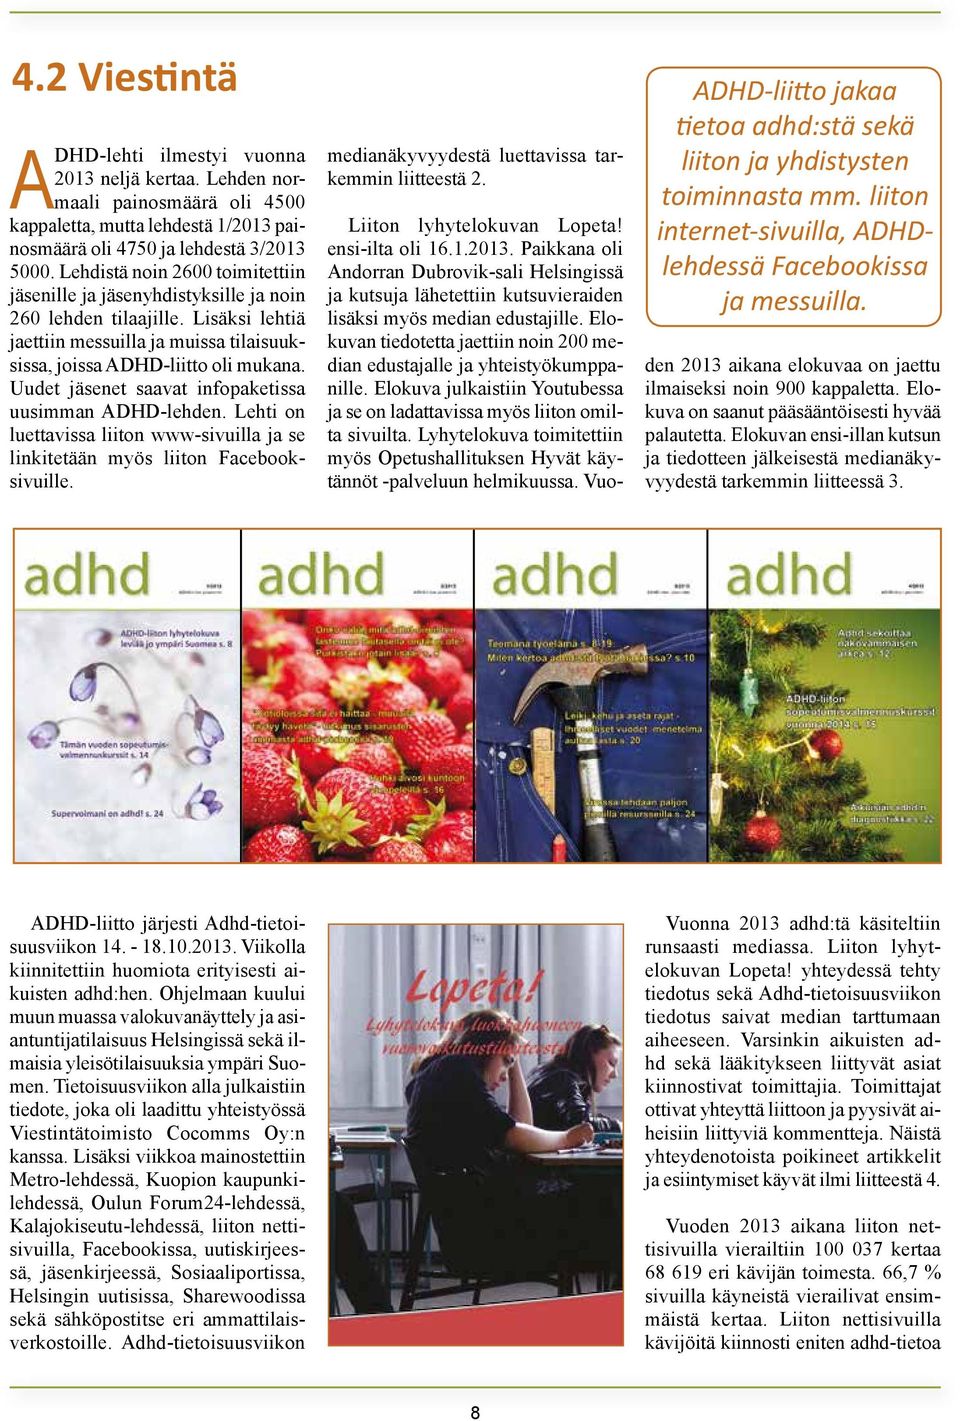 Uudet jäsenet saavat infopaketissa uusimman ADHD-lehden. Lehti on luettavissa liiton www-sivuilla ja se linkitetään myös liiton Facebooksivuille. medianäkyvyydestä luettavissa tarkemmin liitteestä 2.